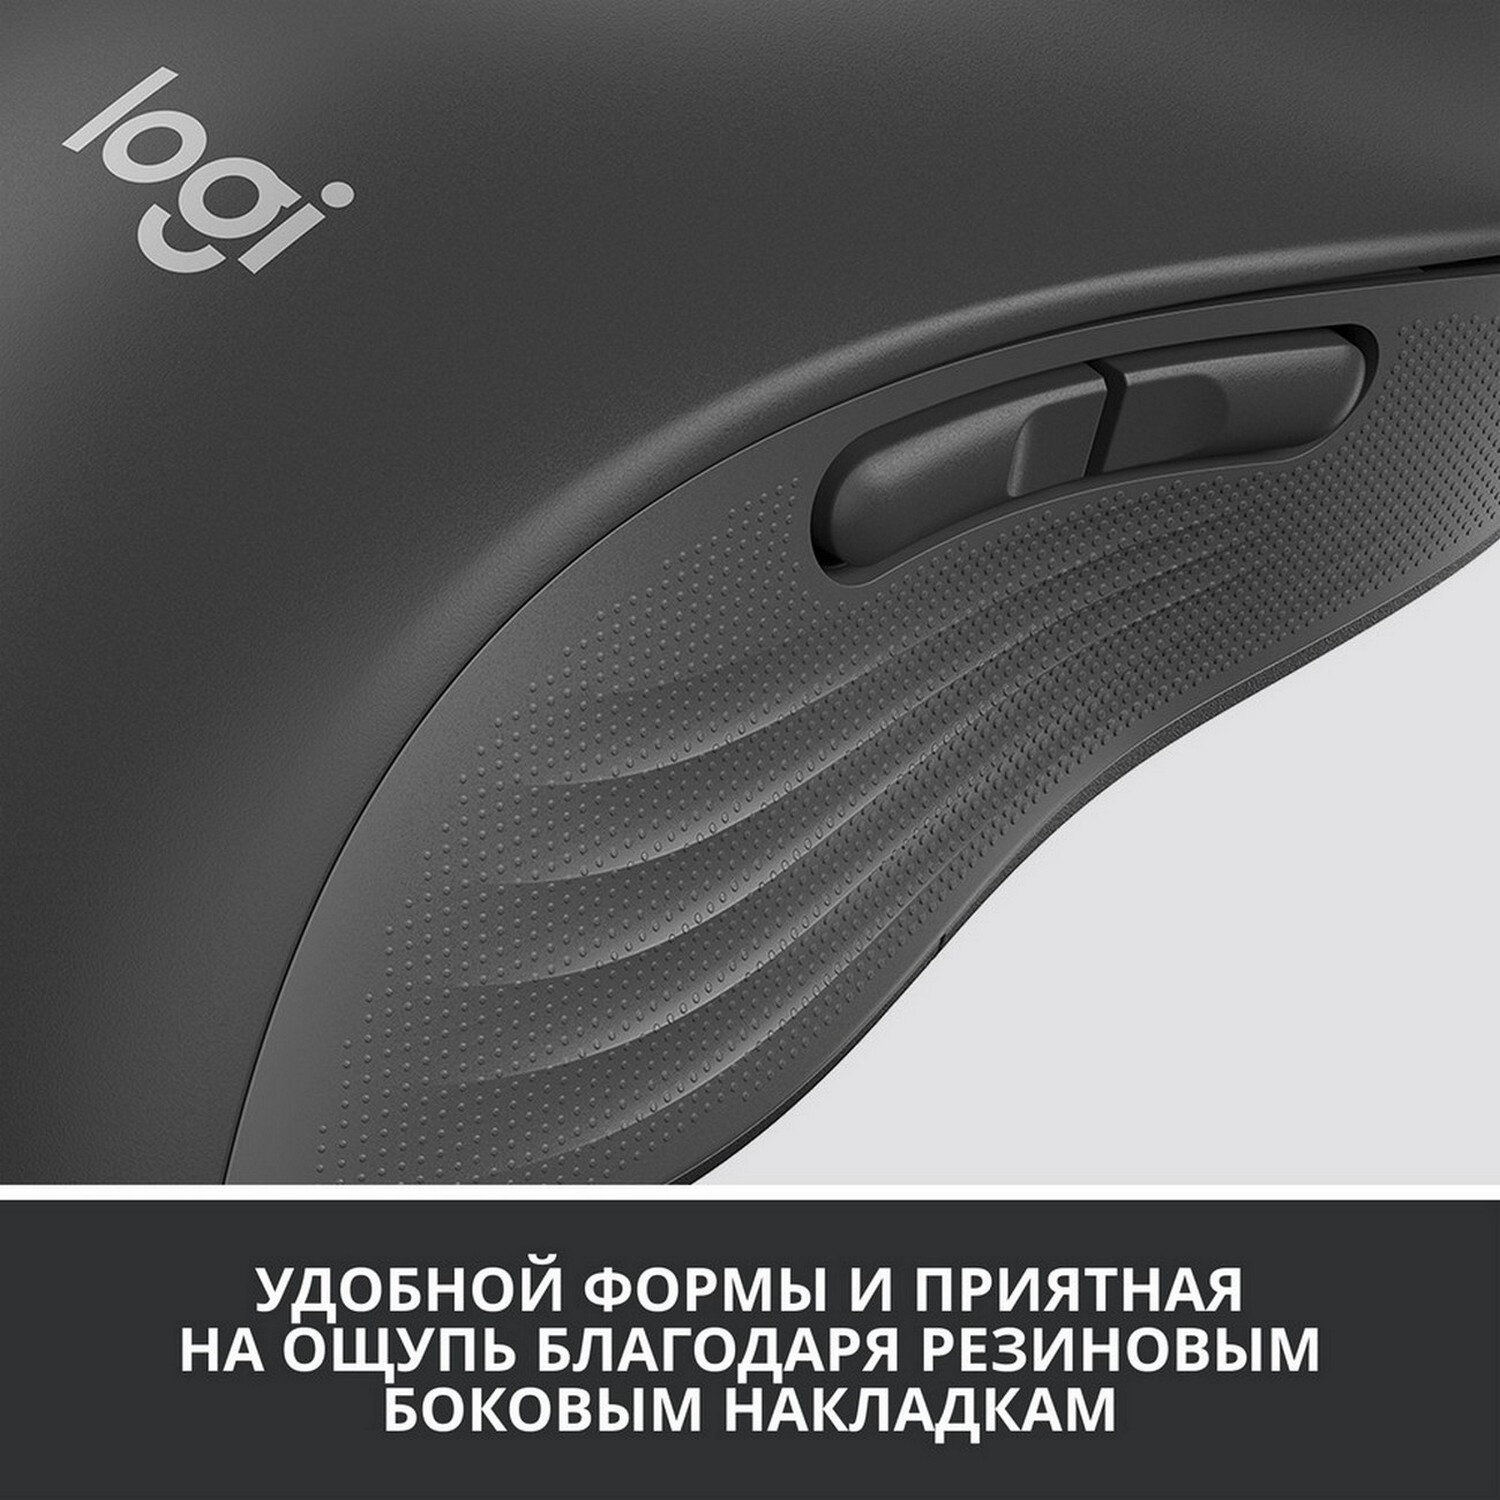 Мышь Logitech M650 L Signature Bluetooth Mouse Graphite Left (910-006239) (беспроводная радио/Blueto